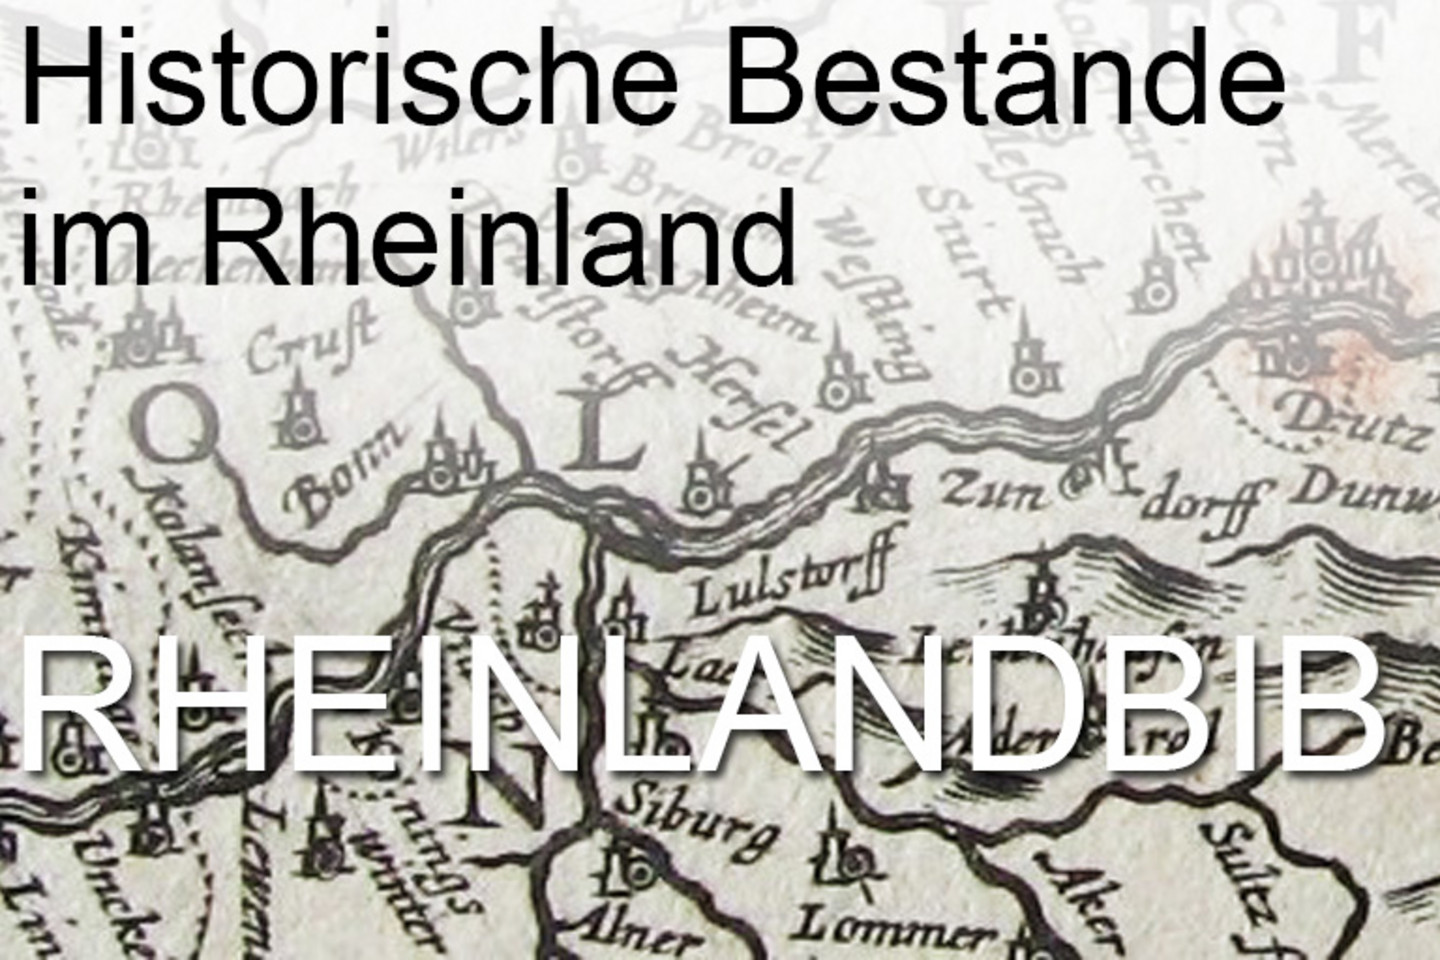 [This content is not available in "Englisch" yet] Detailansicht einer historischen Landkarte des Rheinlandes mit der Aufschrift: Historische Bestände im Rheinland - RHEINLANDBIB